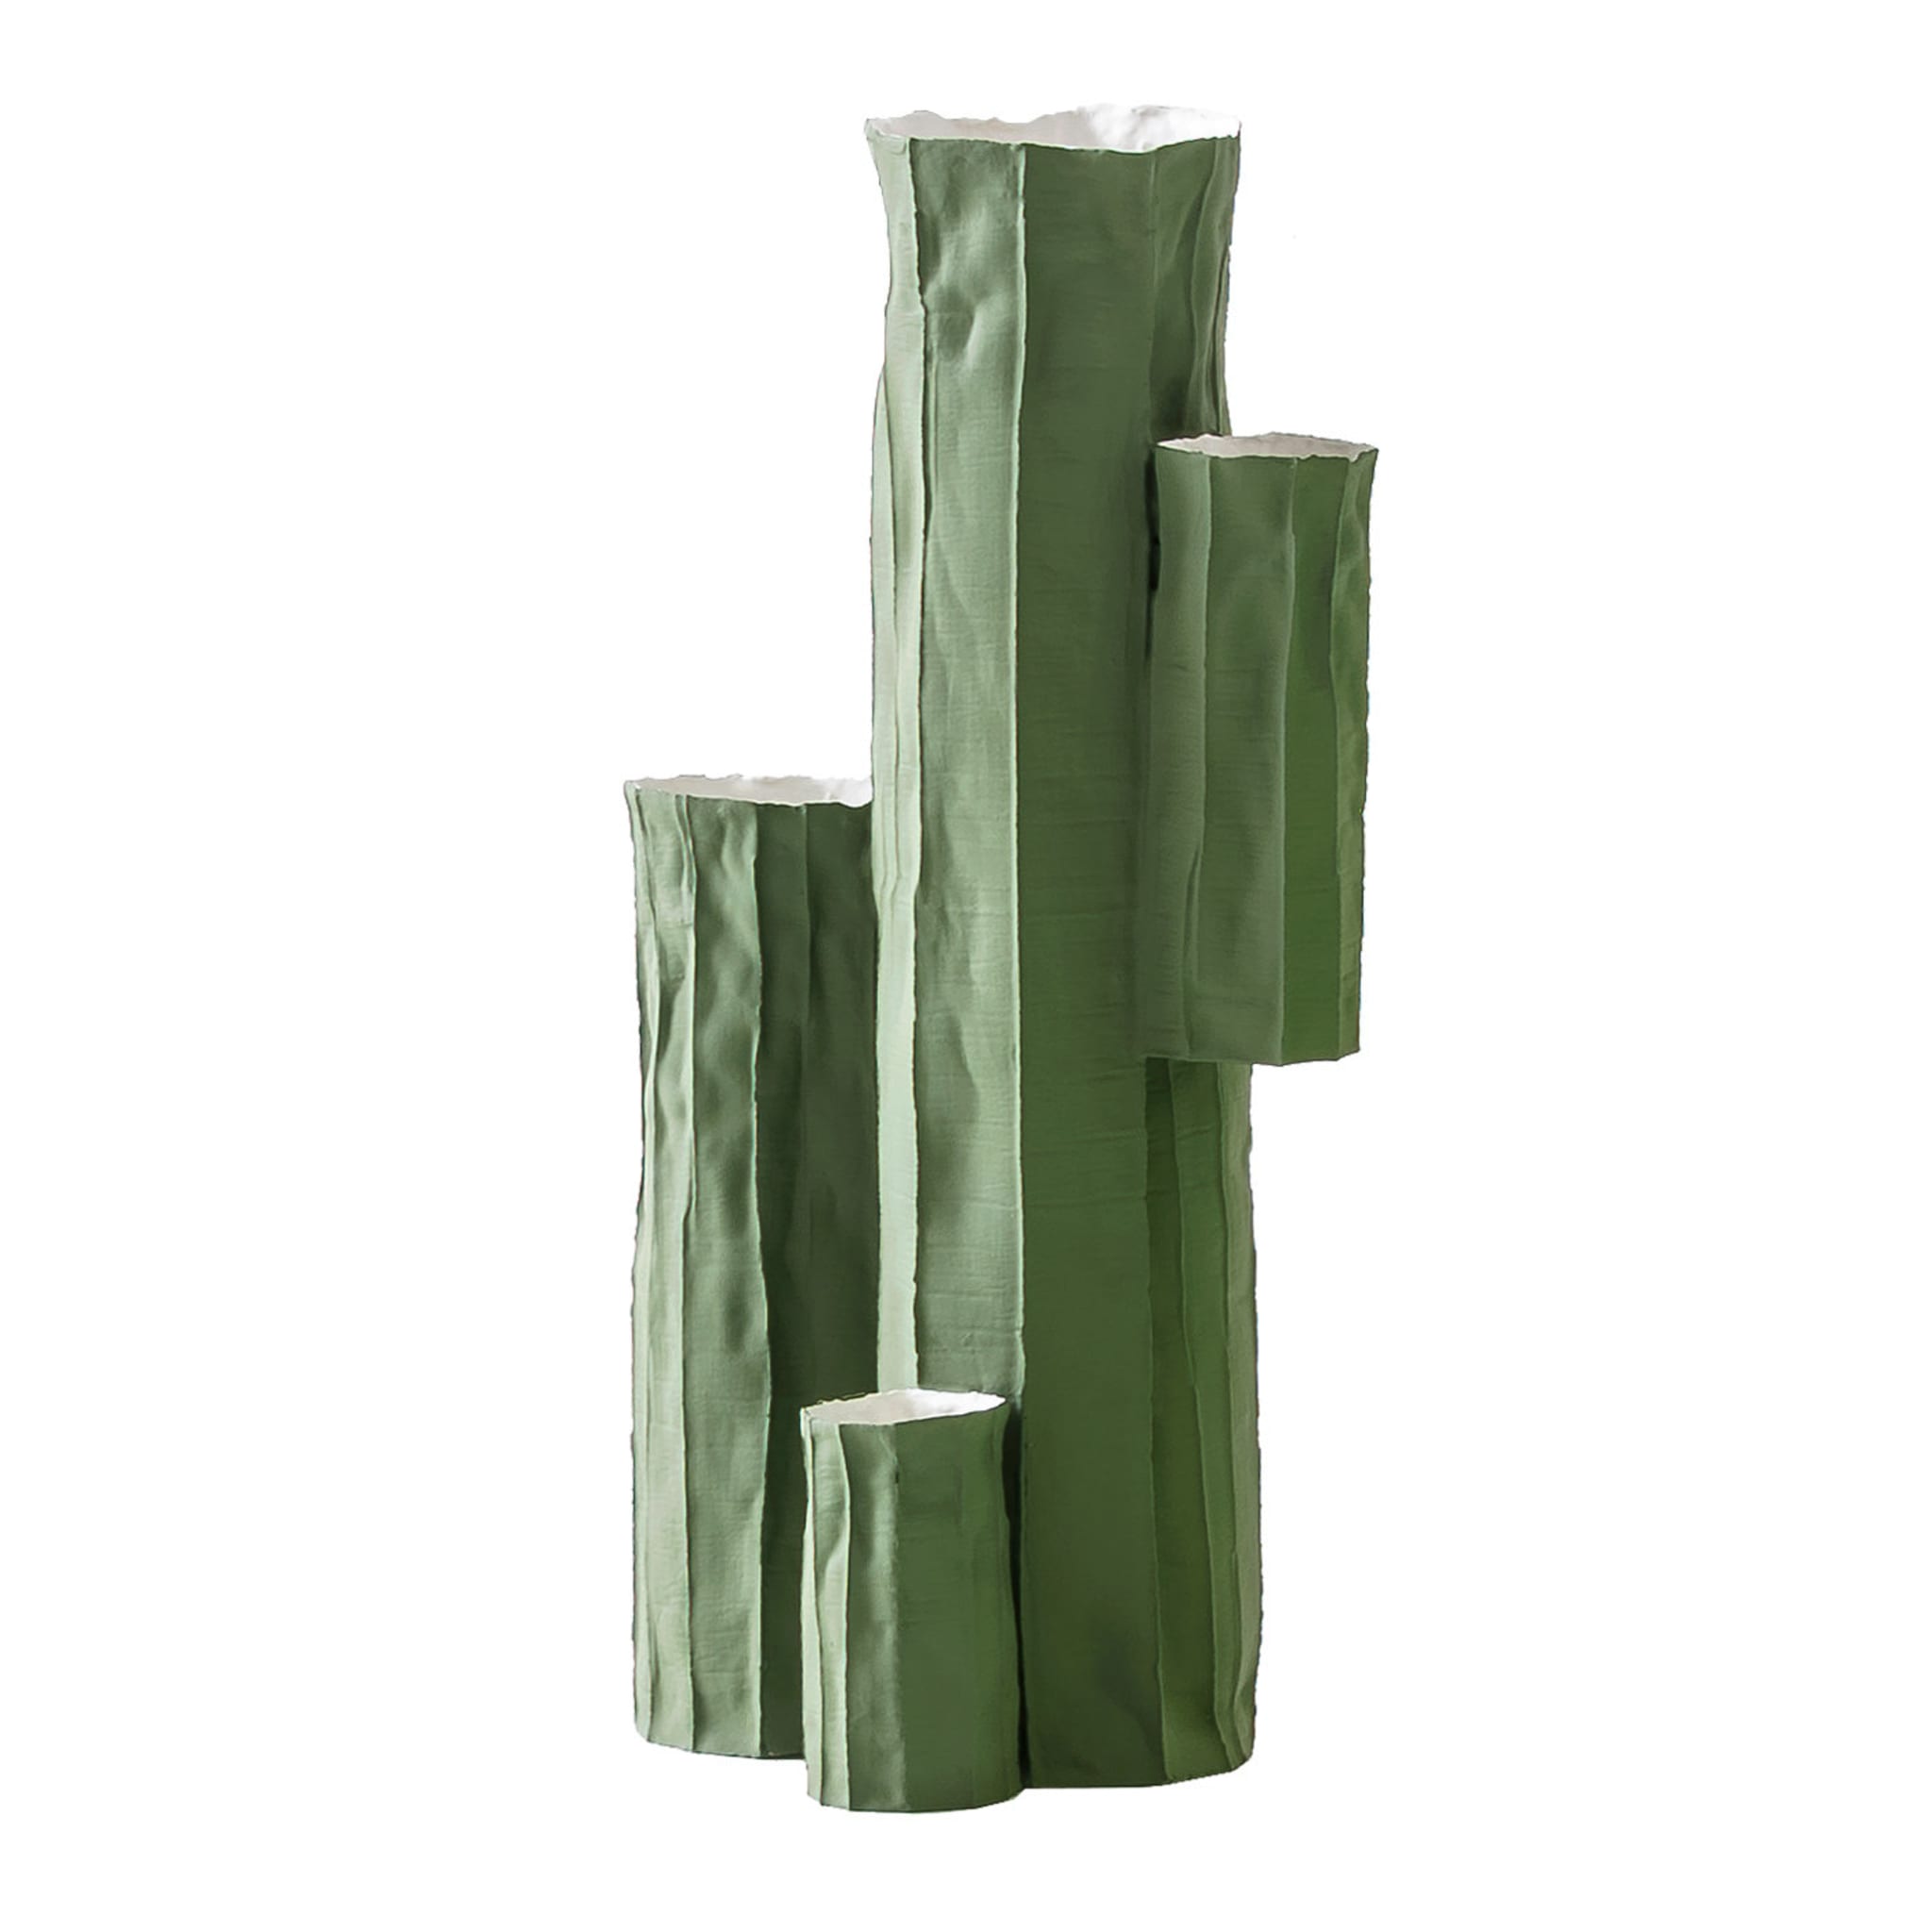 Kaktus-Vase #1 - Hauptansicht